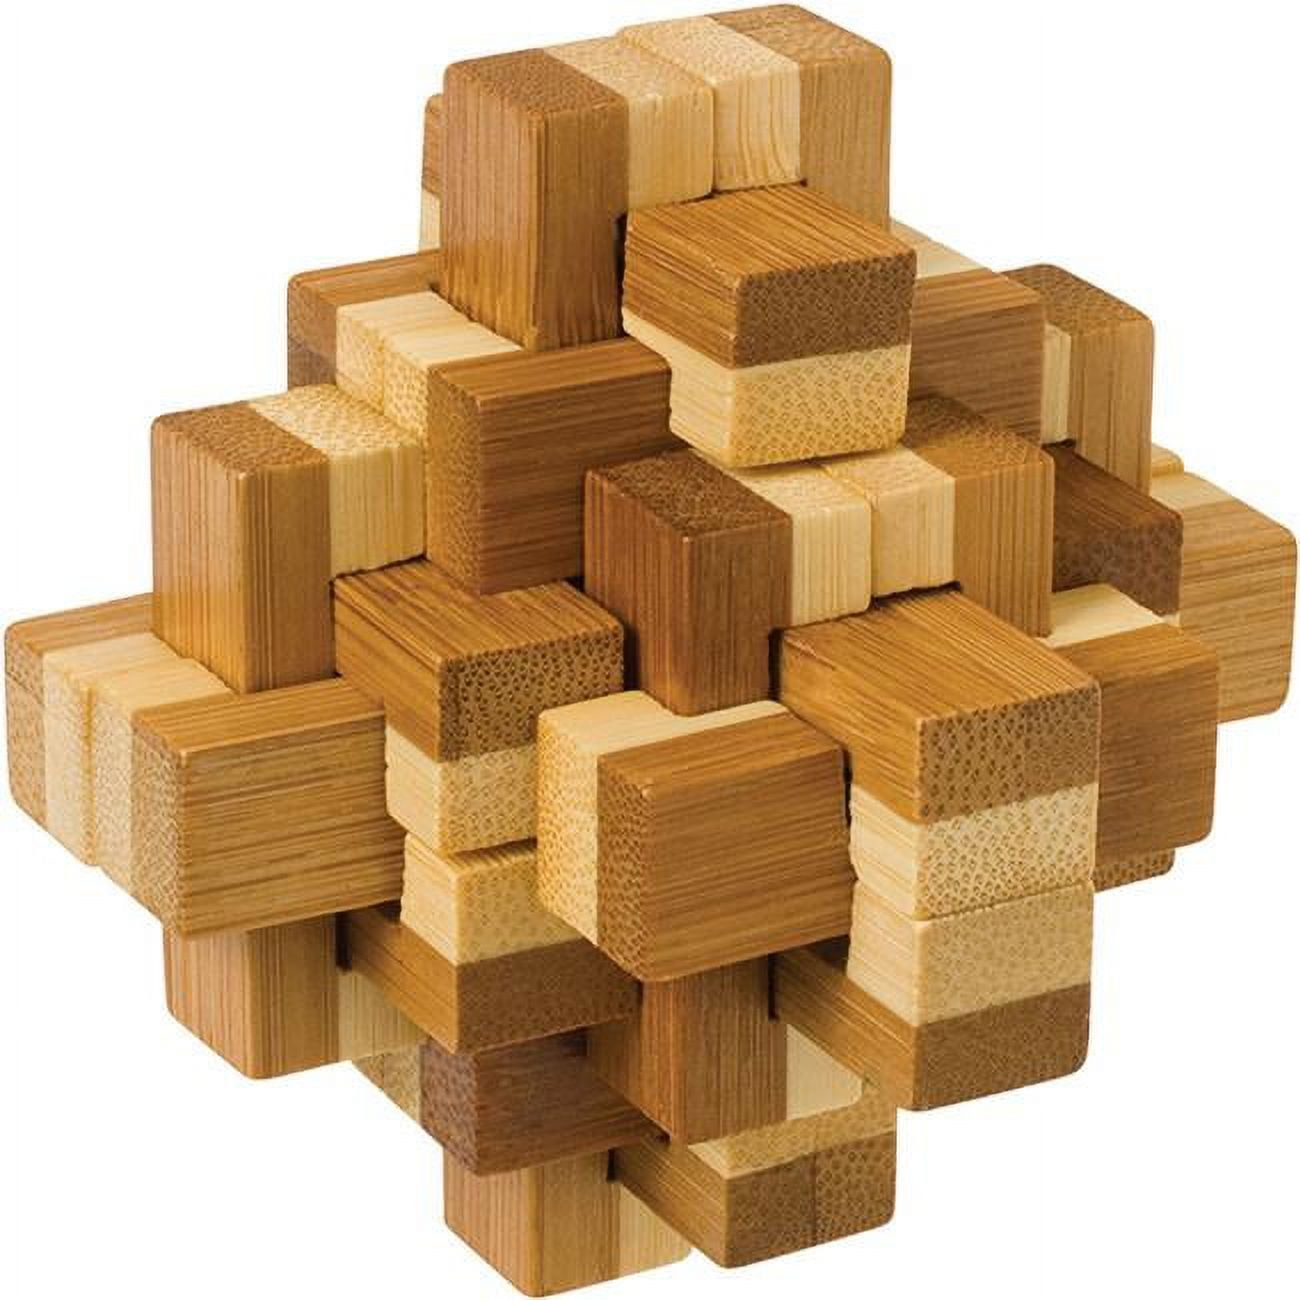 Colle pour Puzzle 3000 pièces Jig-and-Puz-80008 Colles pour puzzles